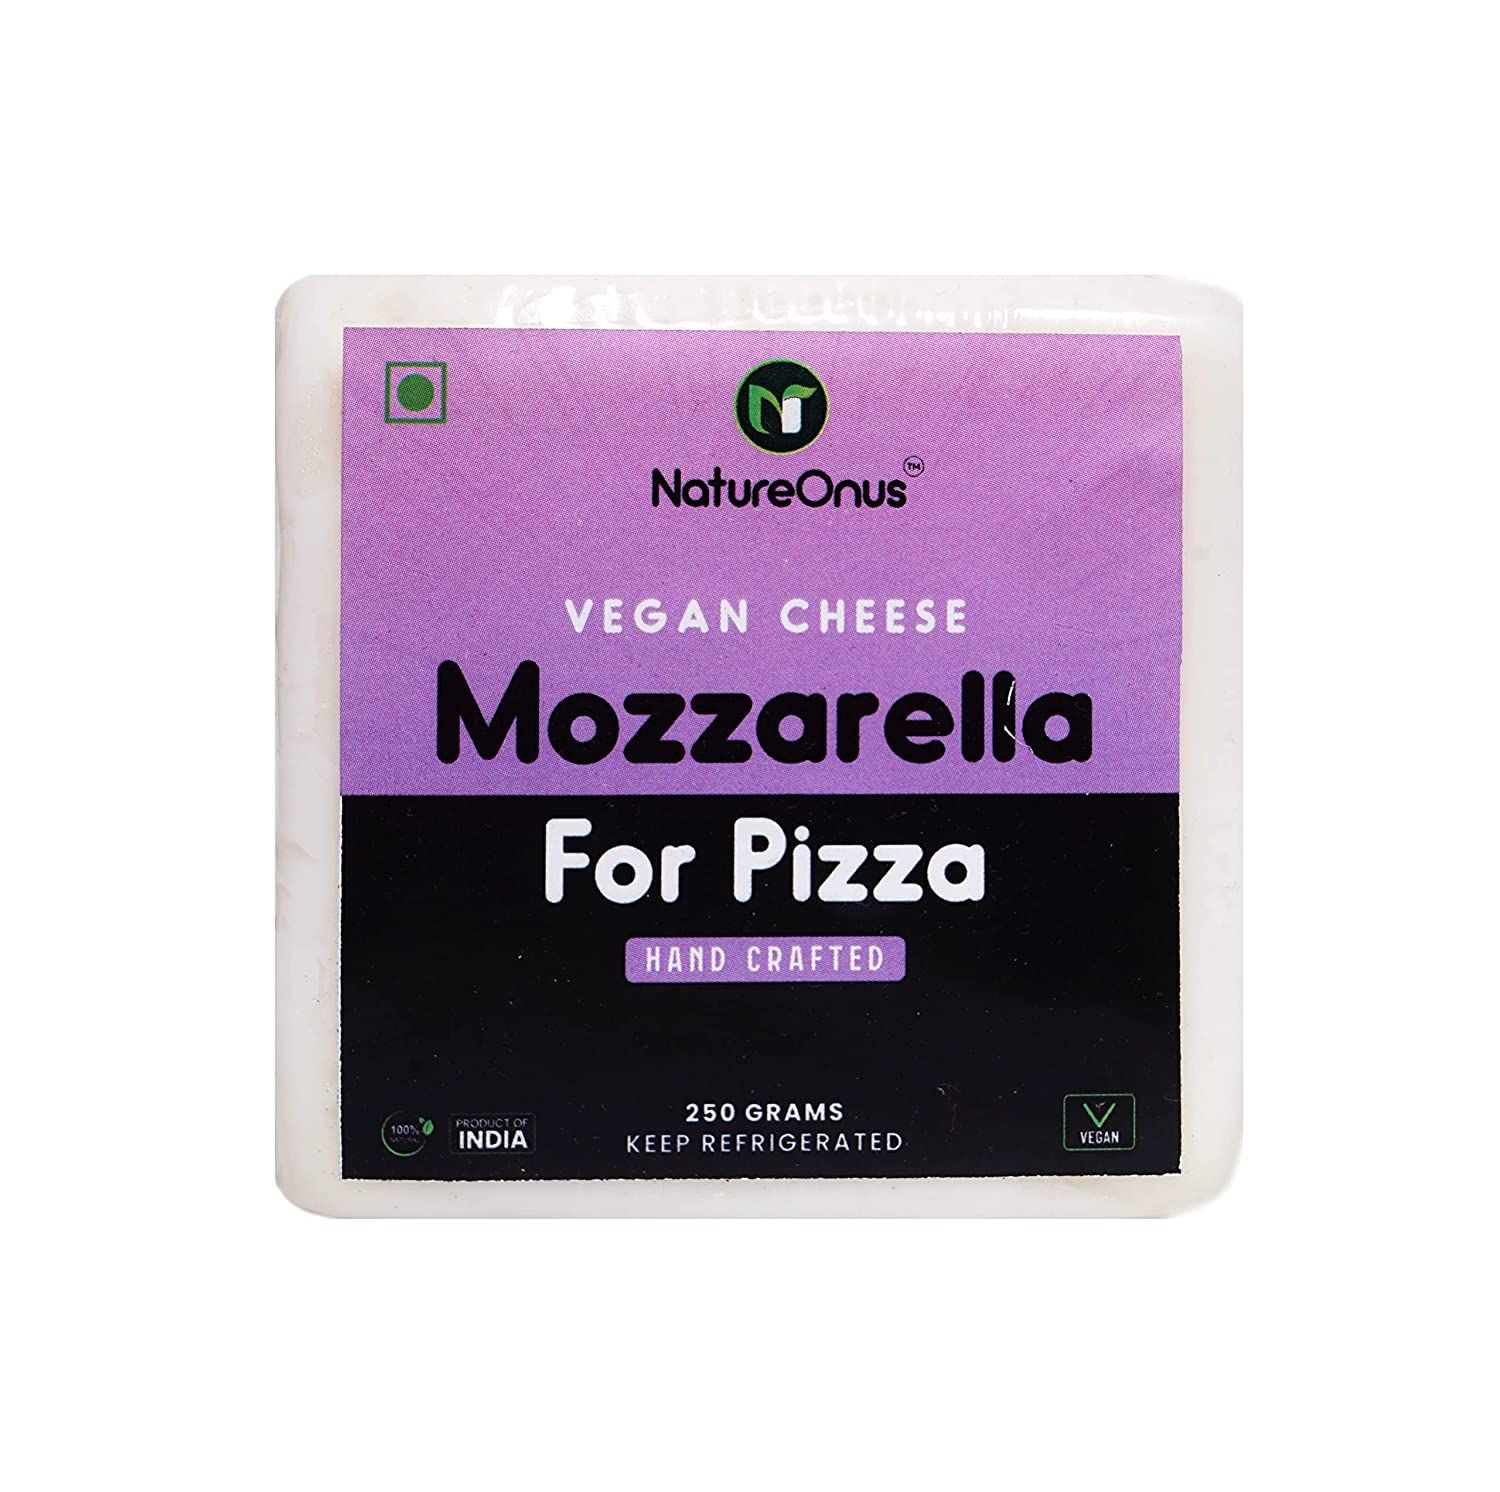 NatureOnus- Vegan Mozzarella Cheese for Pizza Image